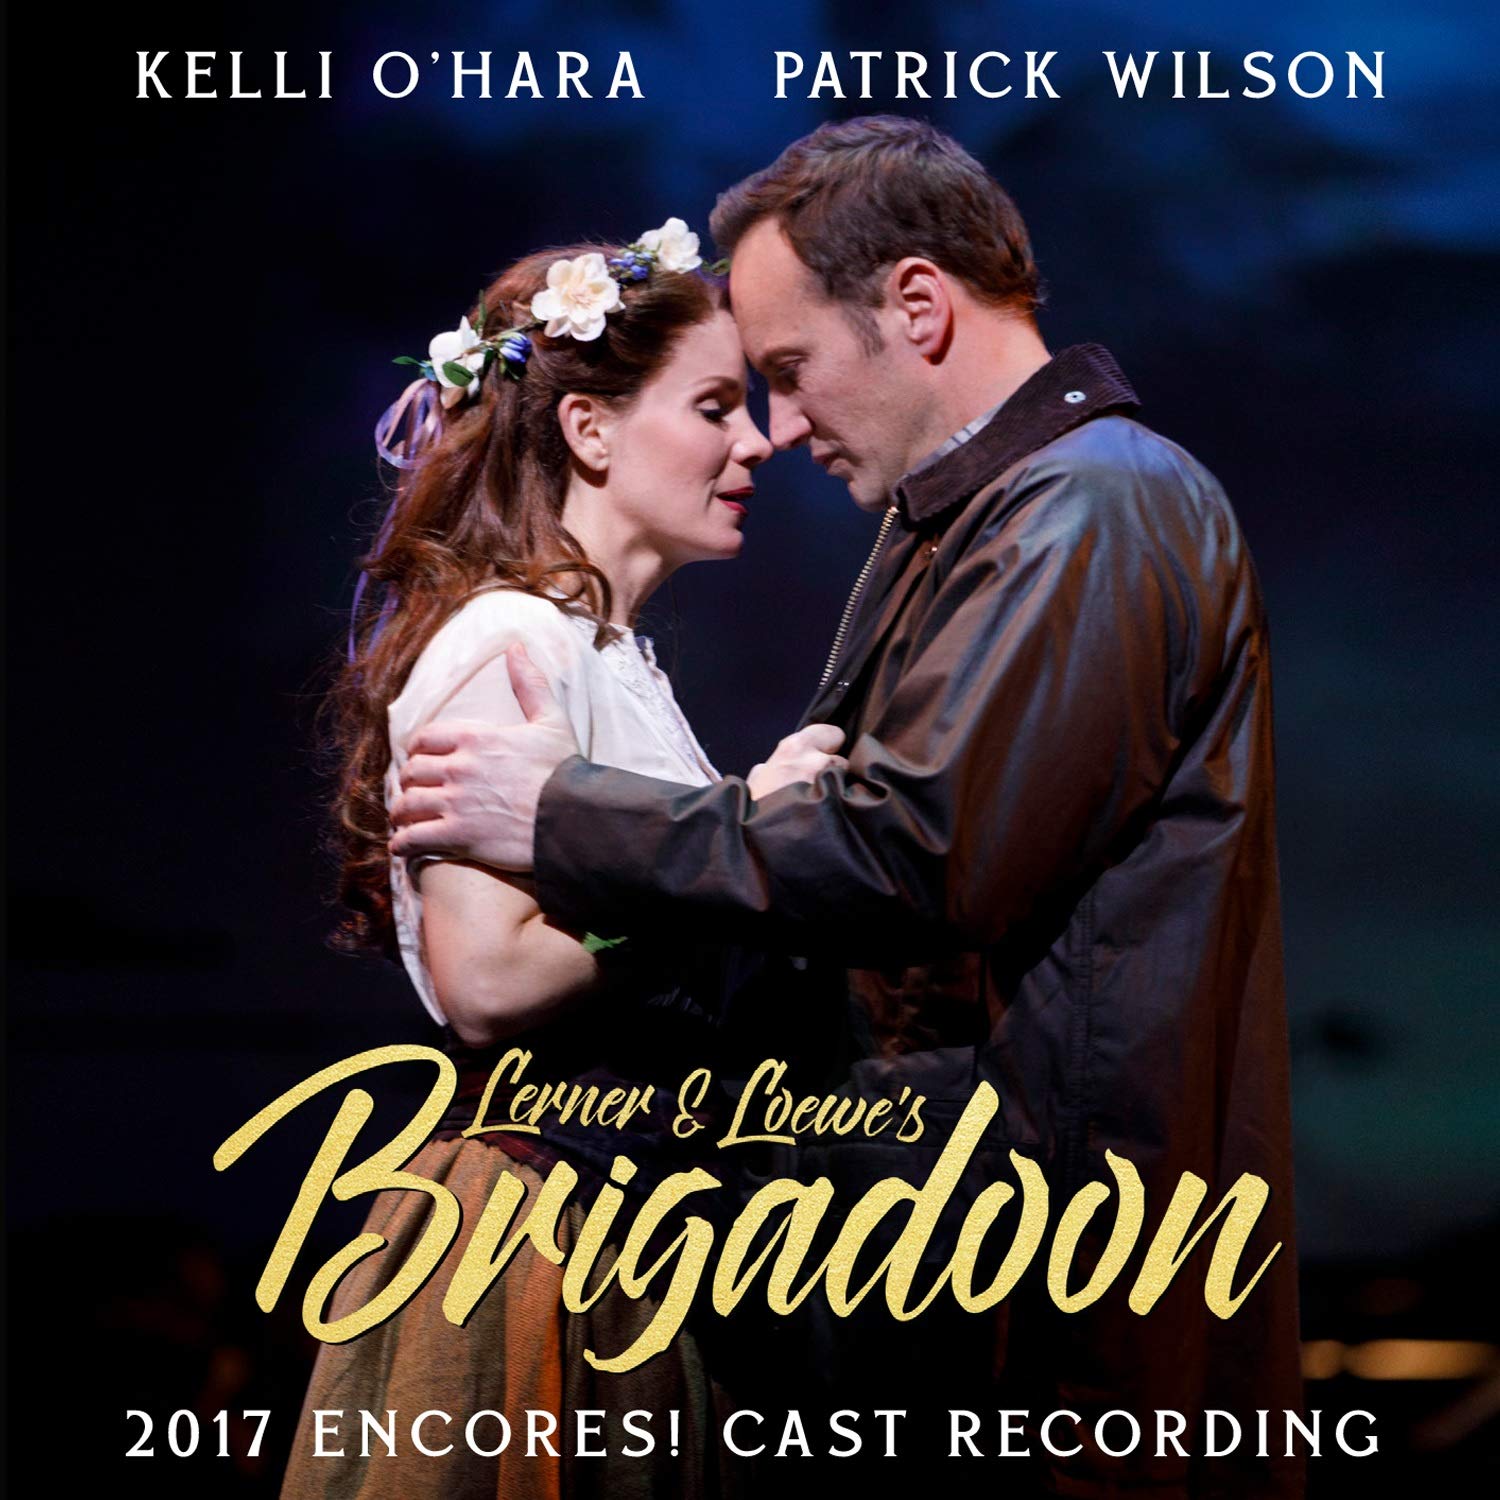 CD Lerner & Loewes Brigadoon - Kelli Ohara & Patrick Wilson